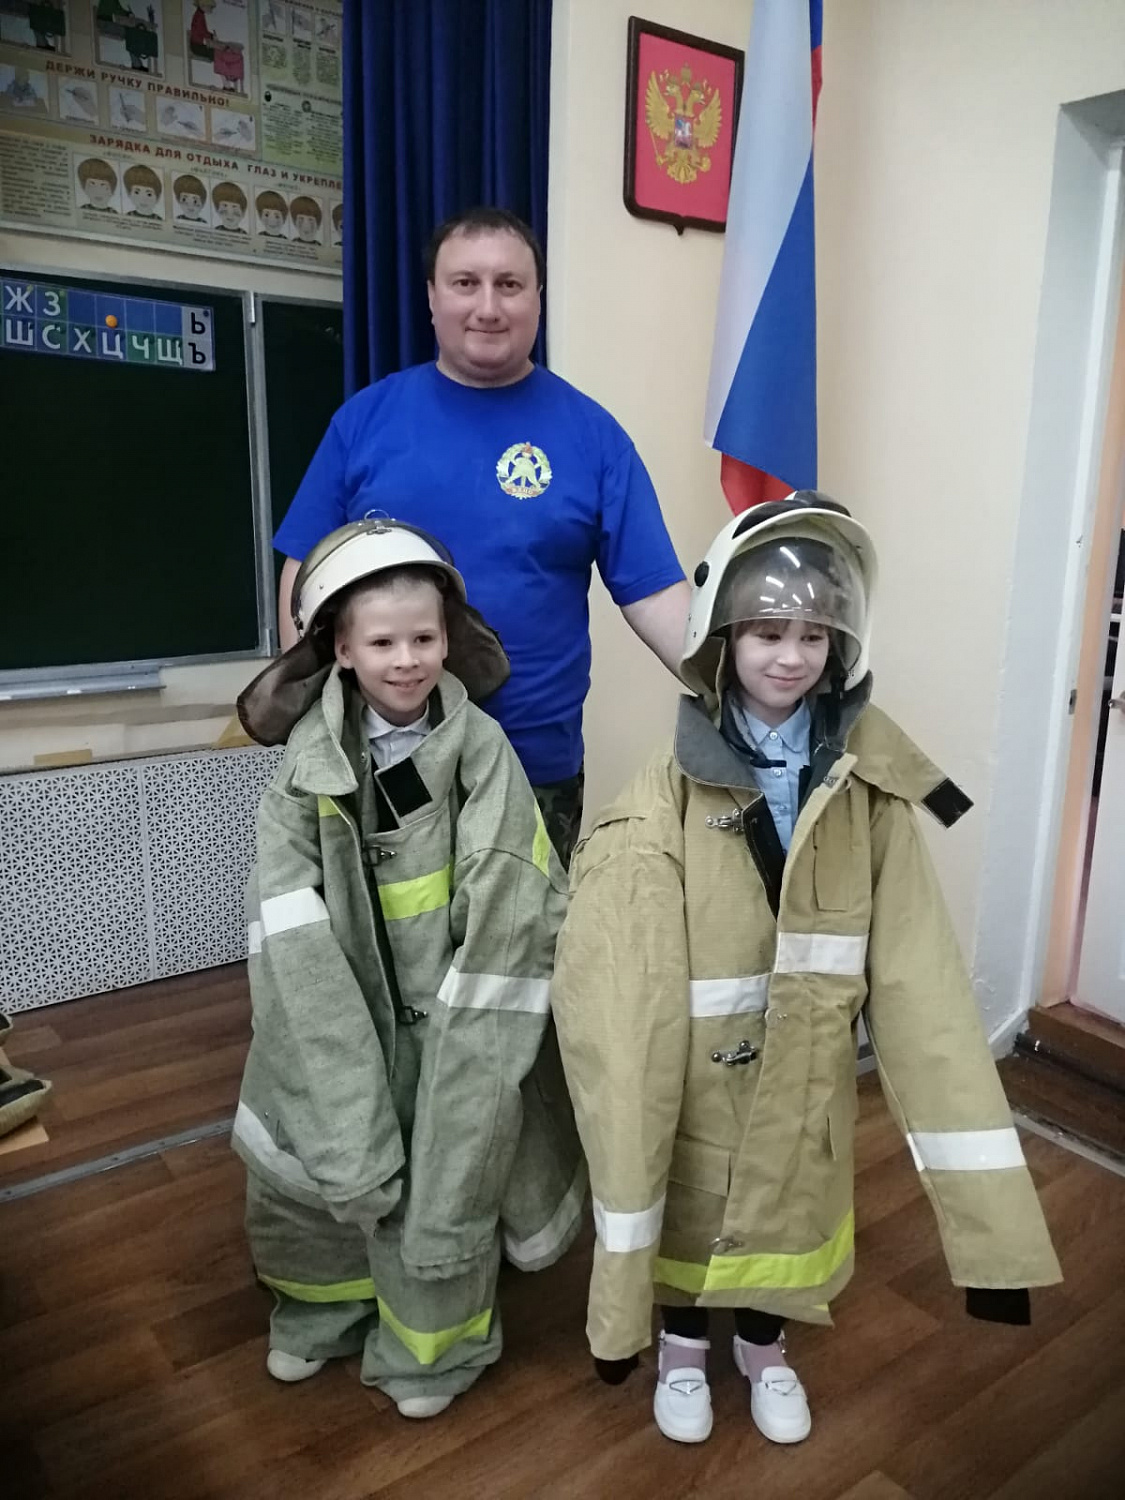 Обучение детей безопасному поведению в случае возникновения пожара - одно из приоритетных направлений работы сотрудников Тульского областного отделения ВДПО